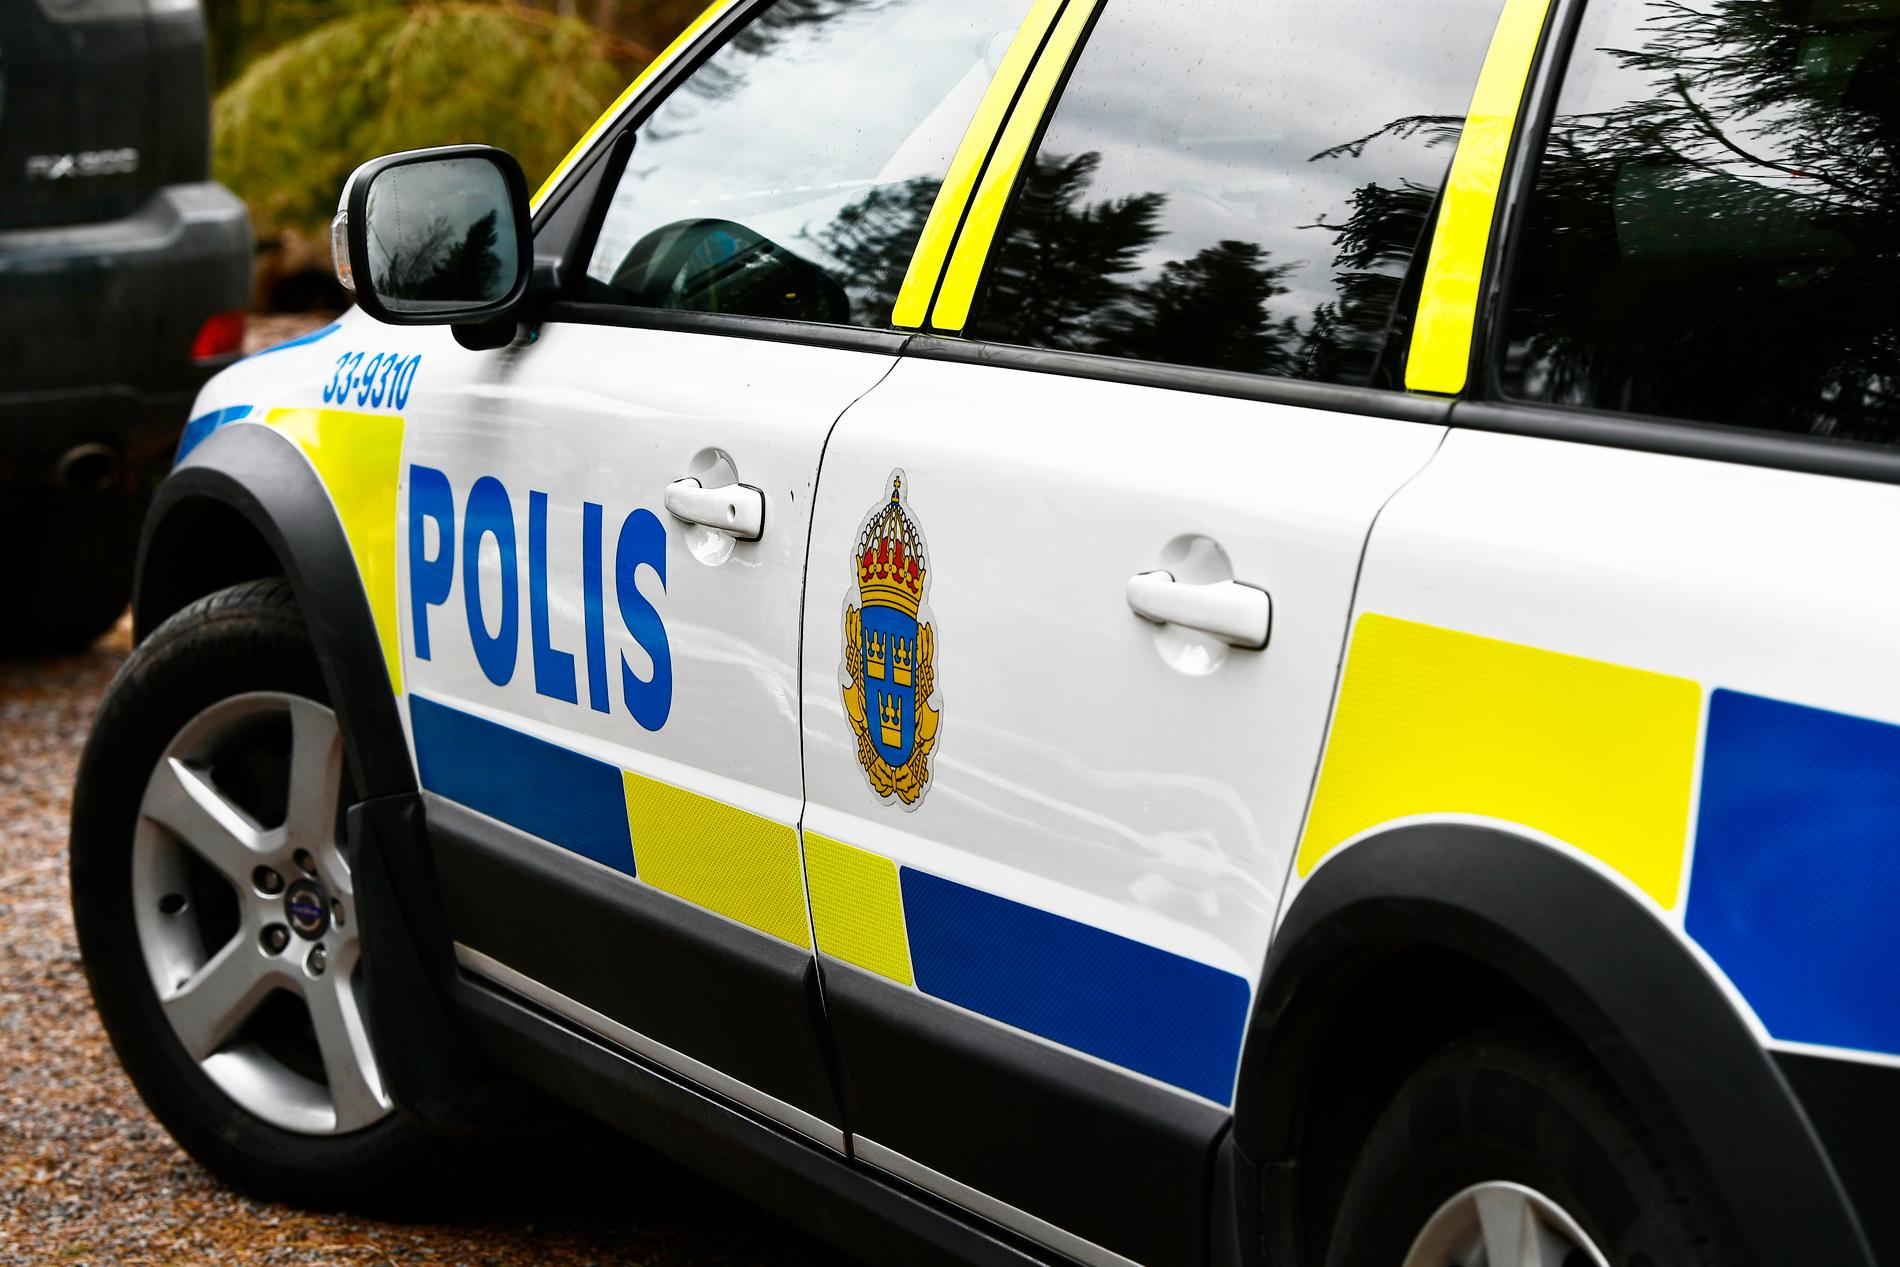 Strax efter klockan 21 på lördagskvällen brann en villa ned till grunden i Vallentuna norr om Stockholm. En man har anhållits misstänkt för mordbrand.